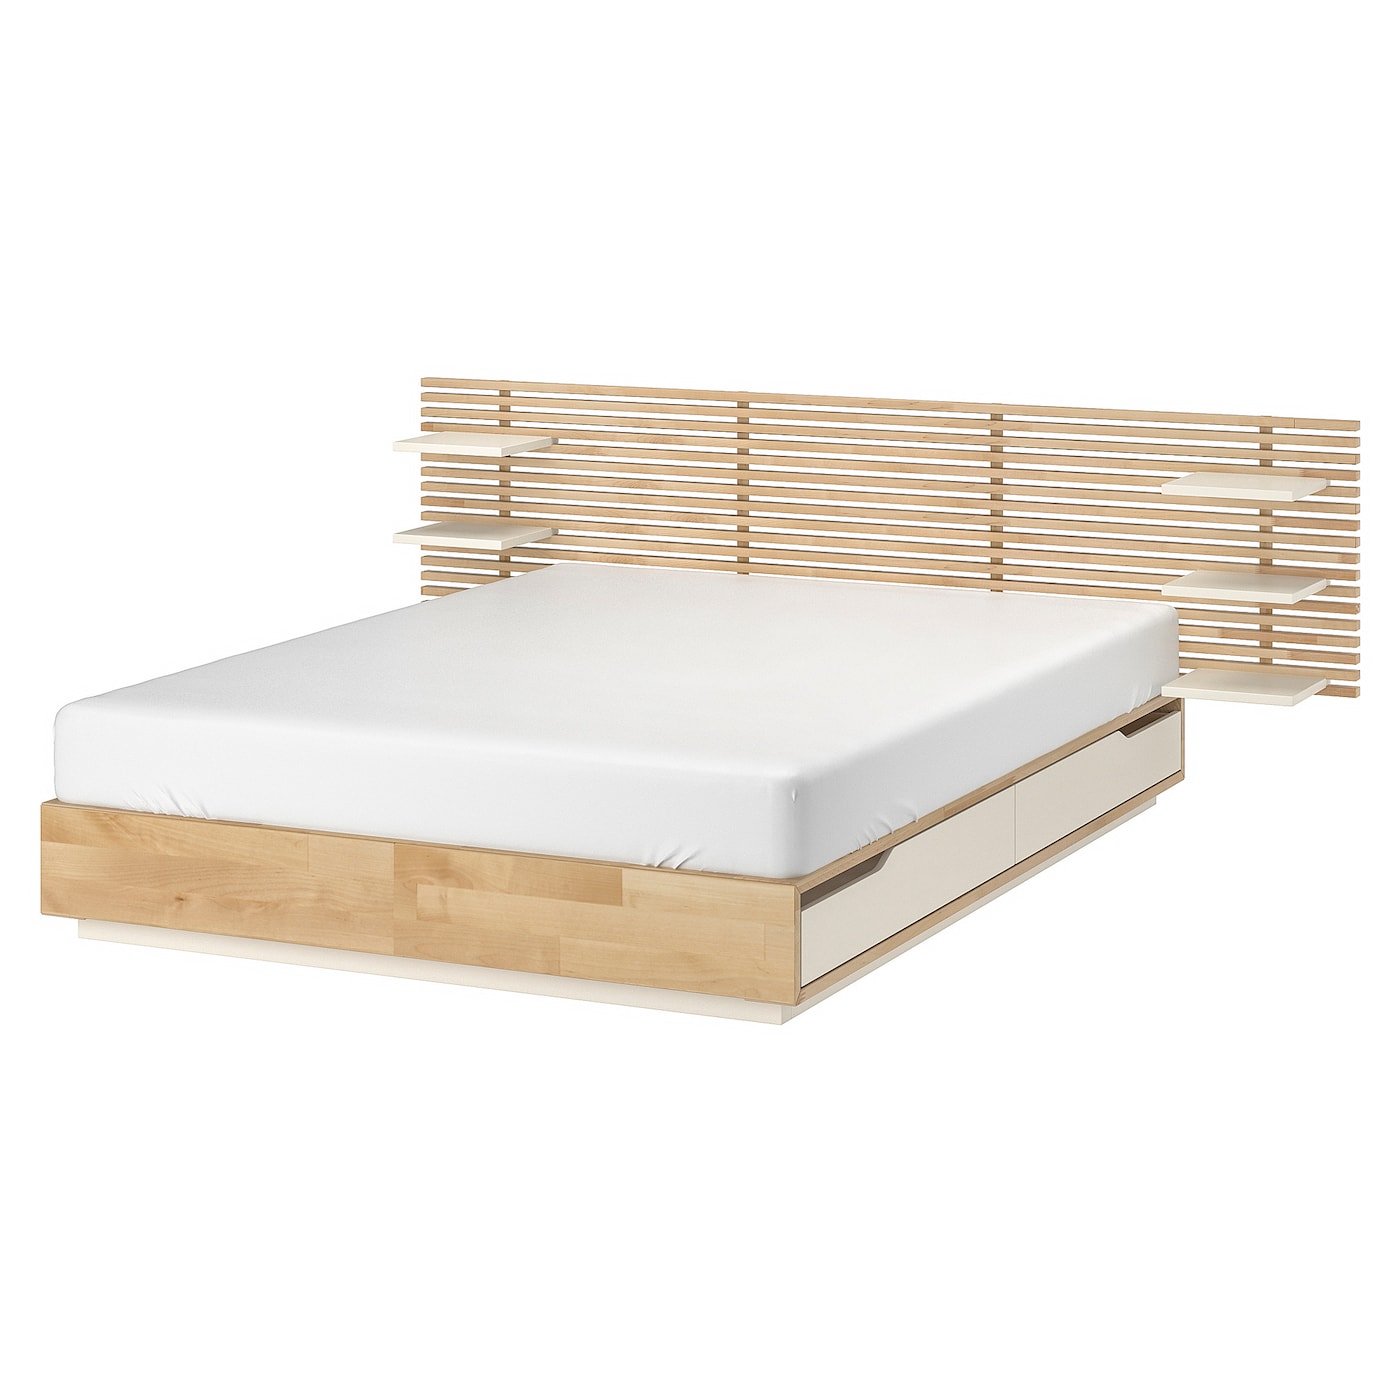 Основание двуспальной кровати - IKEA MANDAL, 200х140 см, береза/белый, МАНДАЛЬ ИКЕА